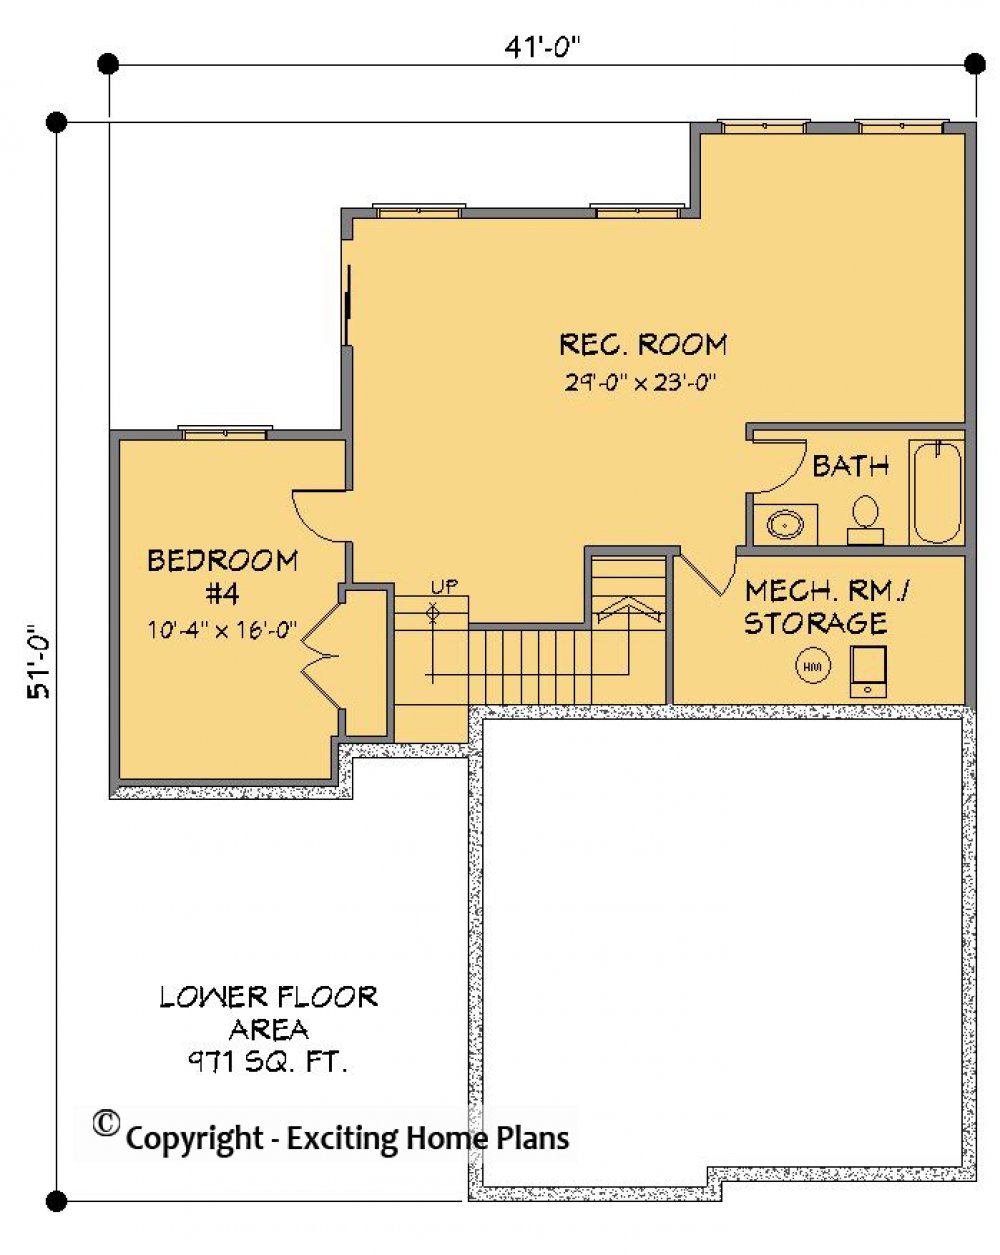 House Plan E1456-10 Lower Floor Plan